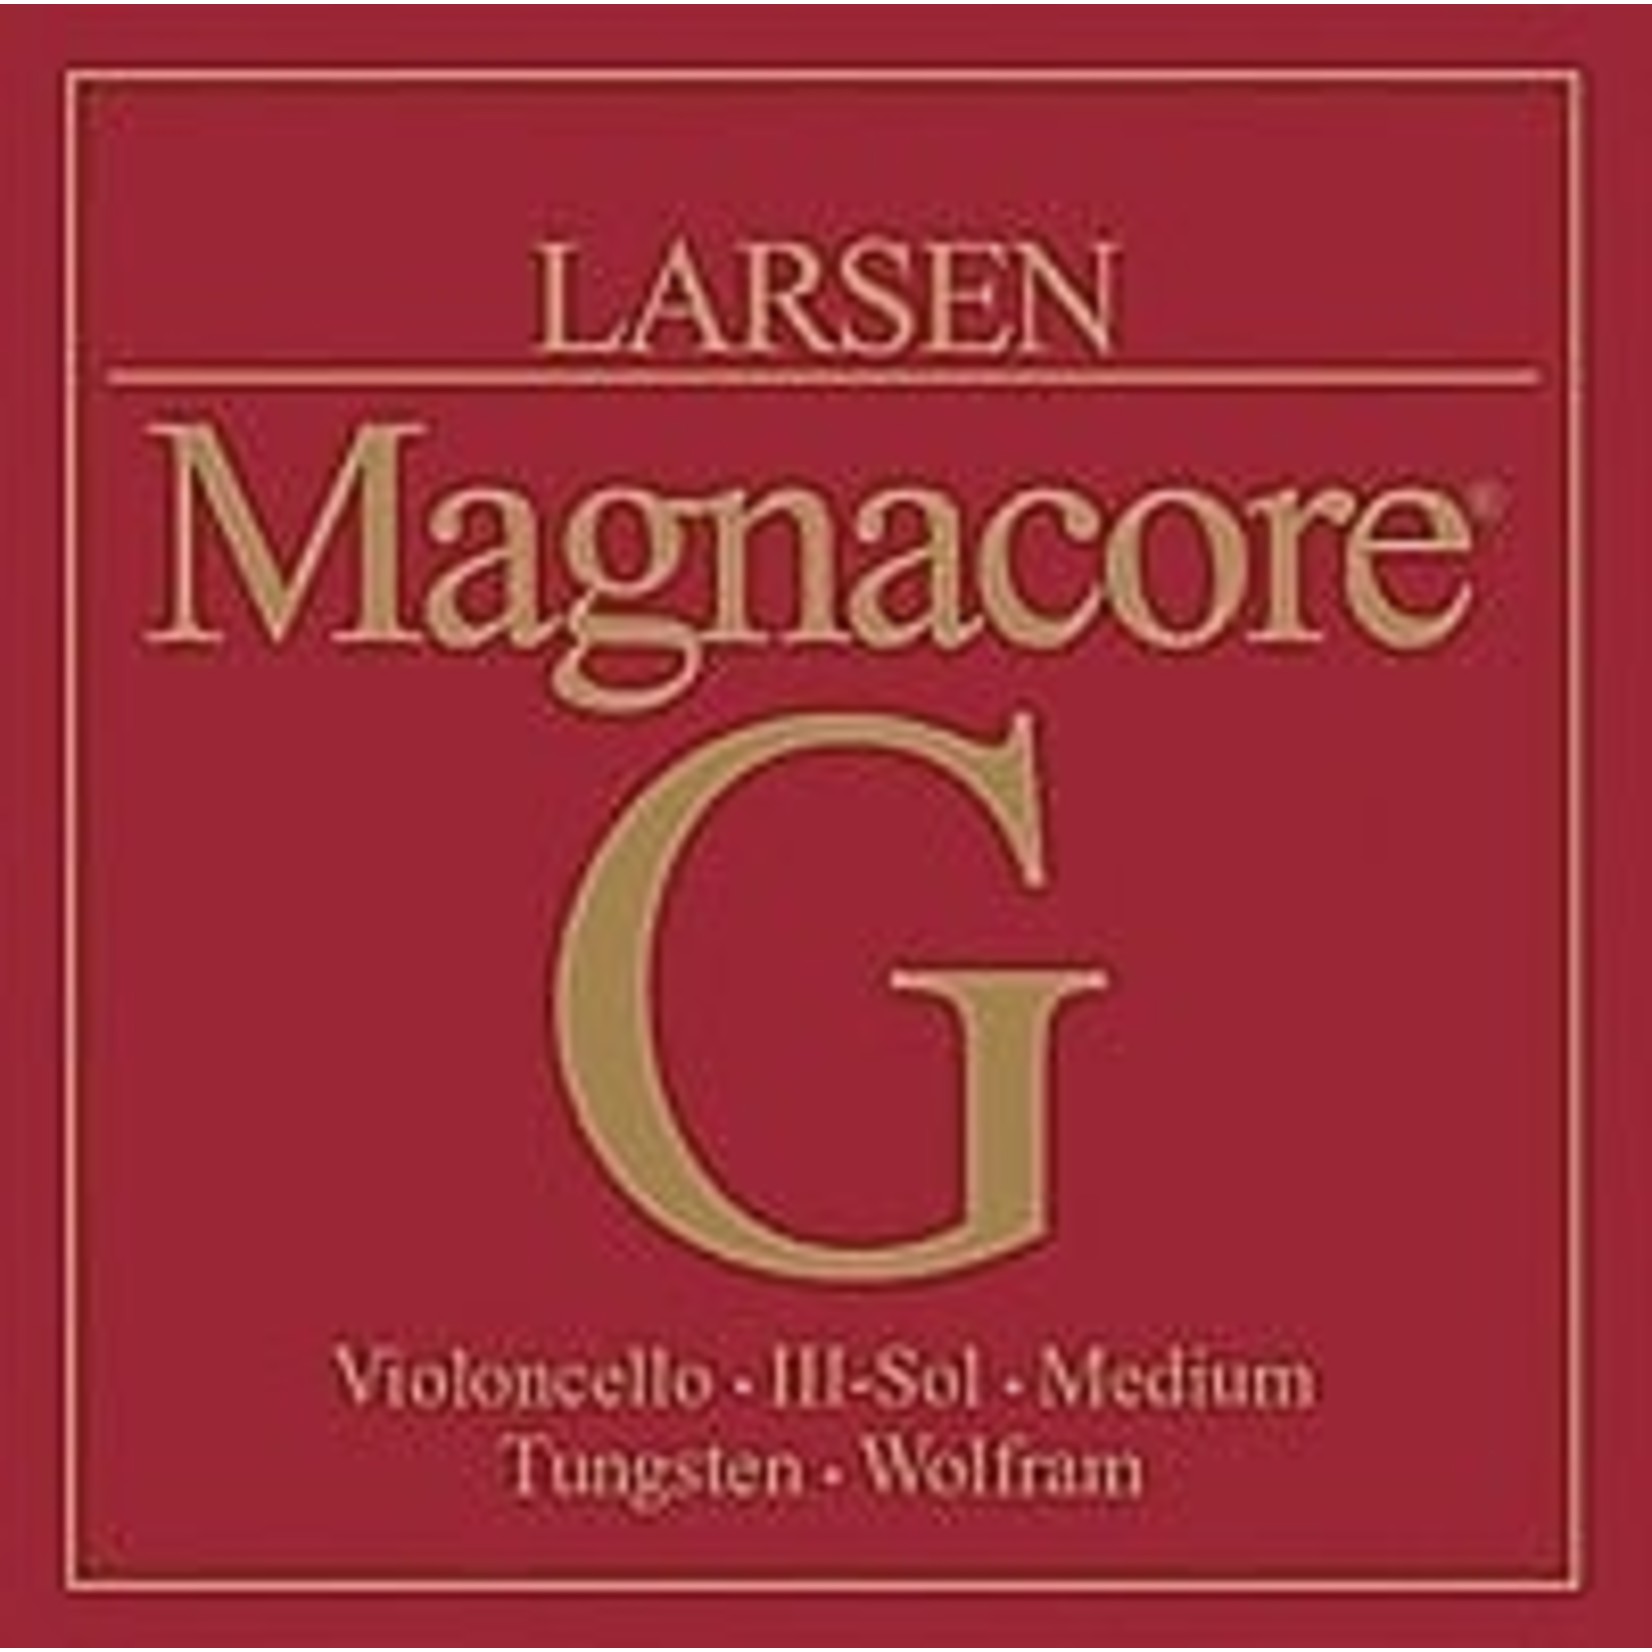 Corde Violoncelle RÉ Larsen Magnacore